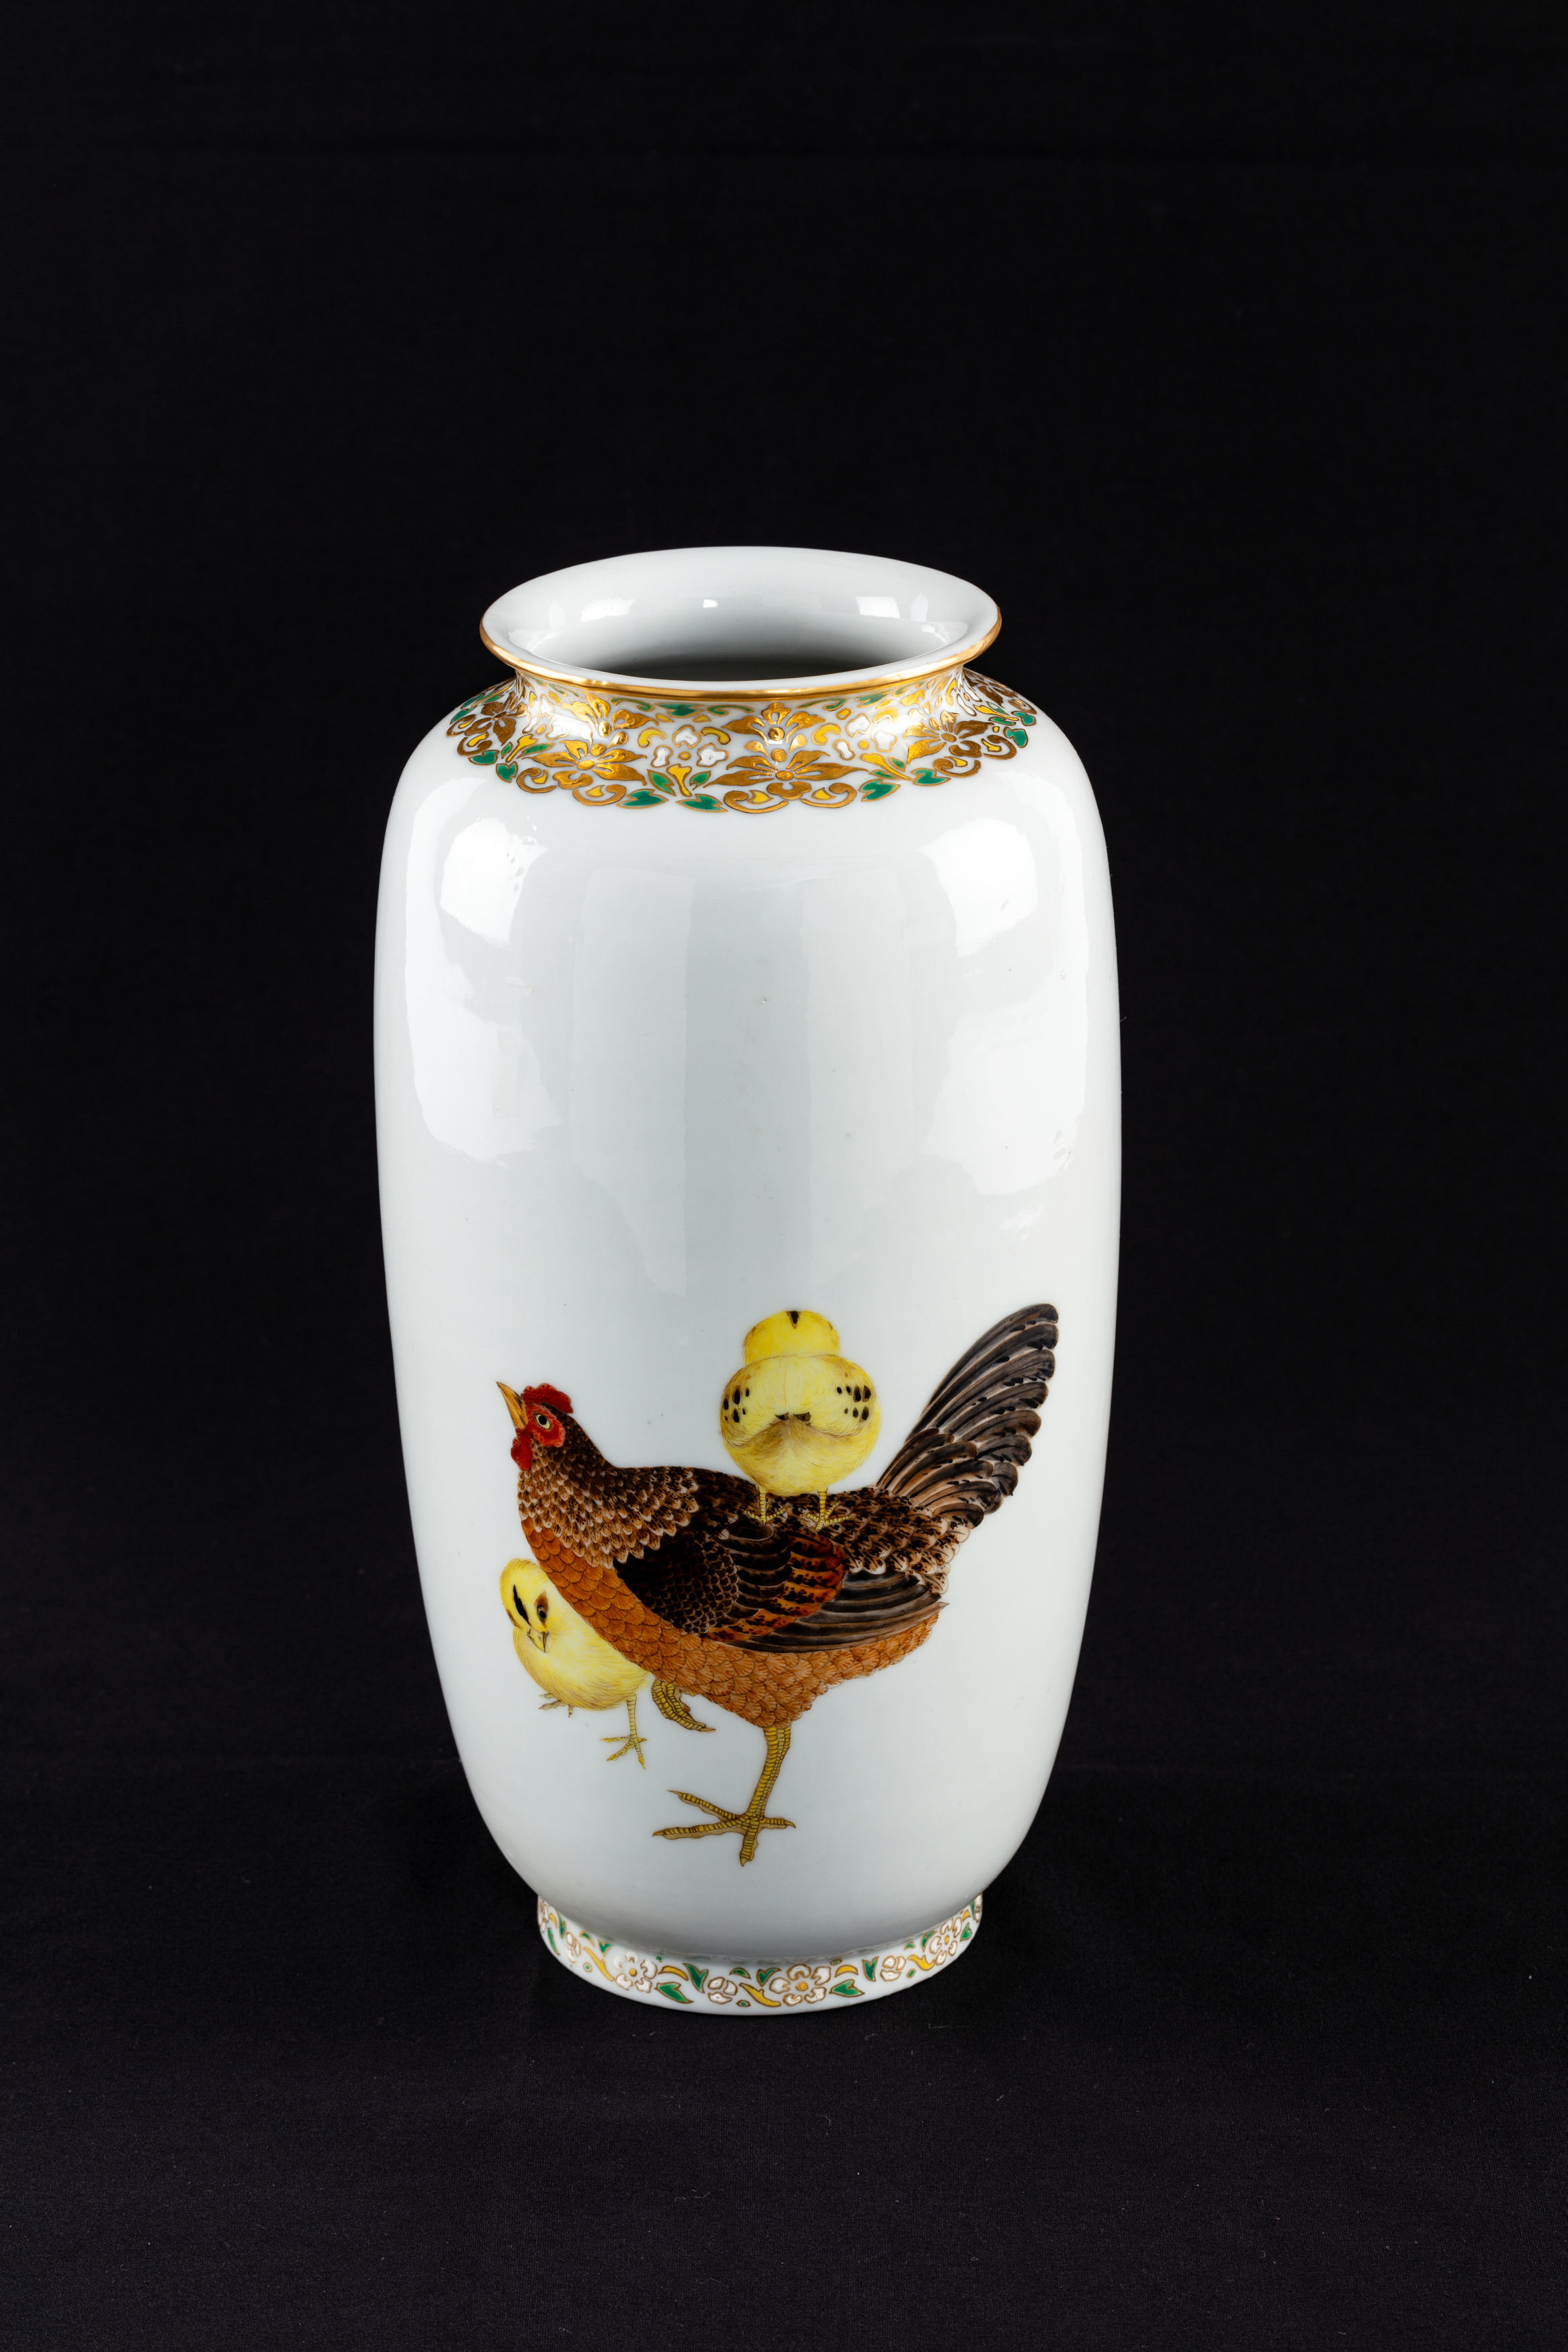 Vase painted by Soga Tokumaru in Japan